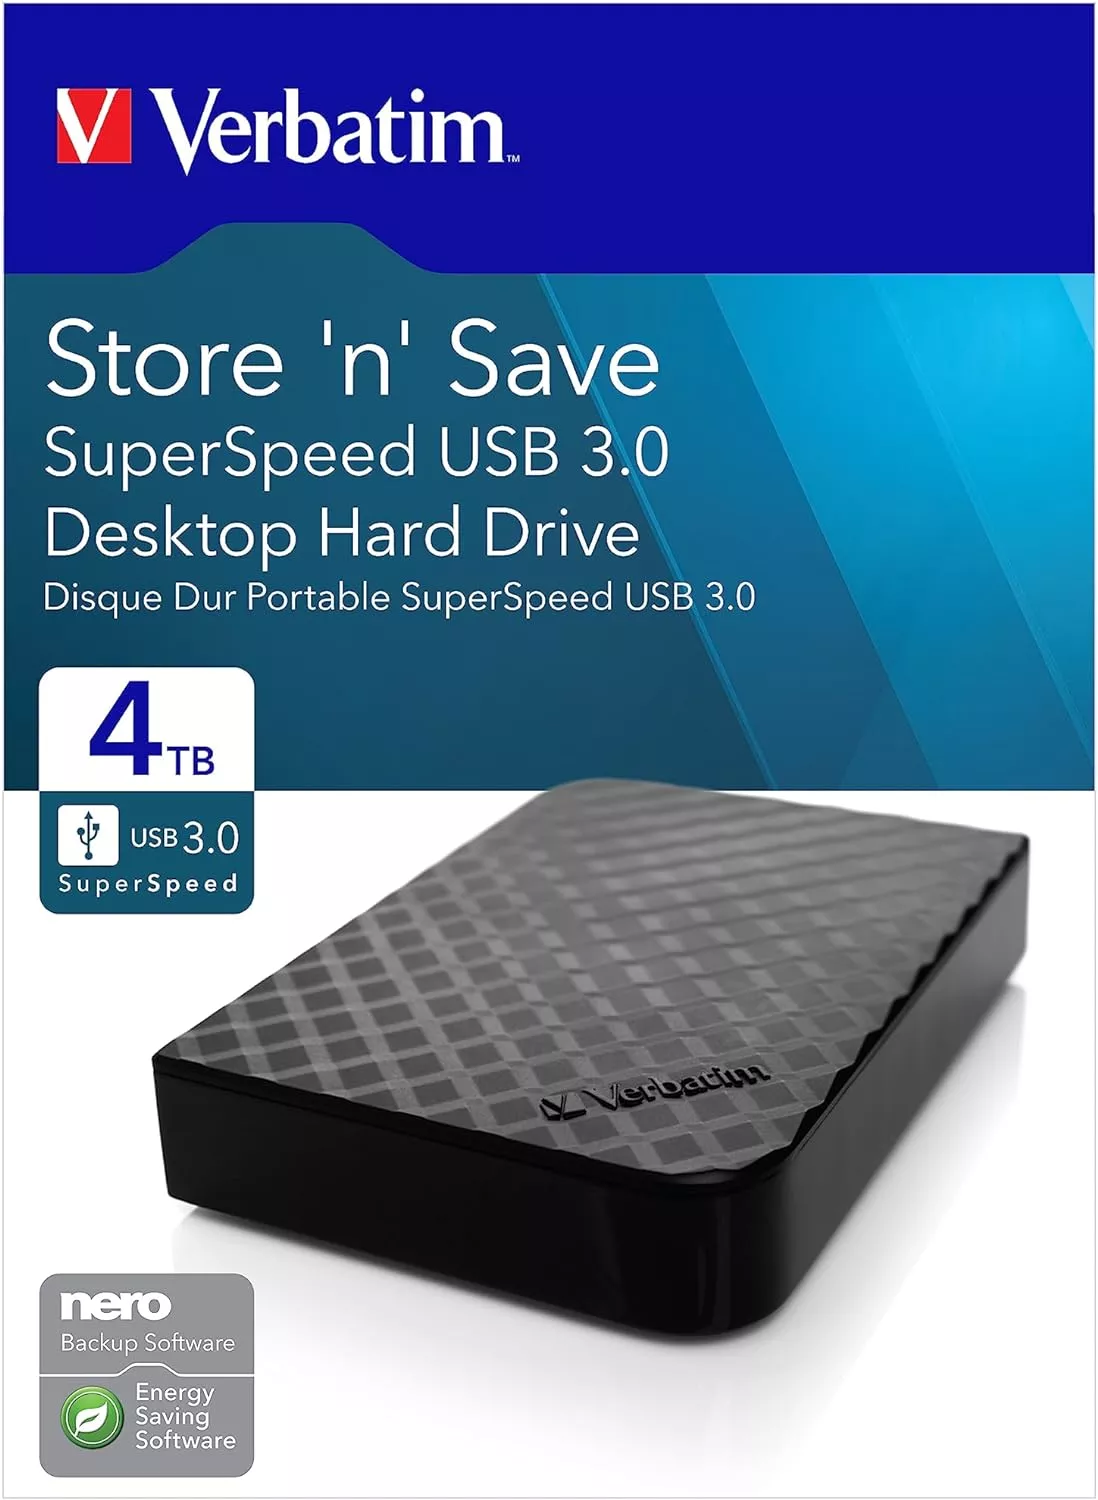 Disque Dur externe Verbatim Store'n' Go USB 3.0 / 5 To